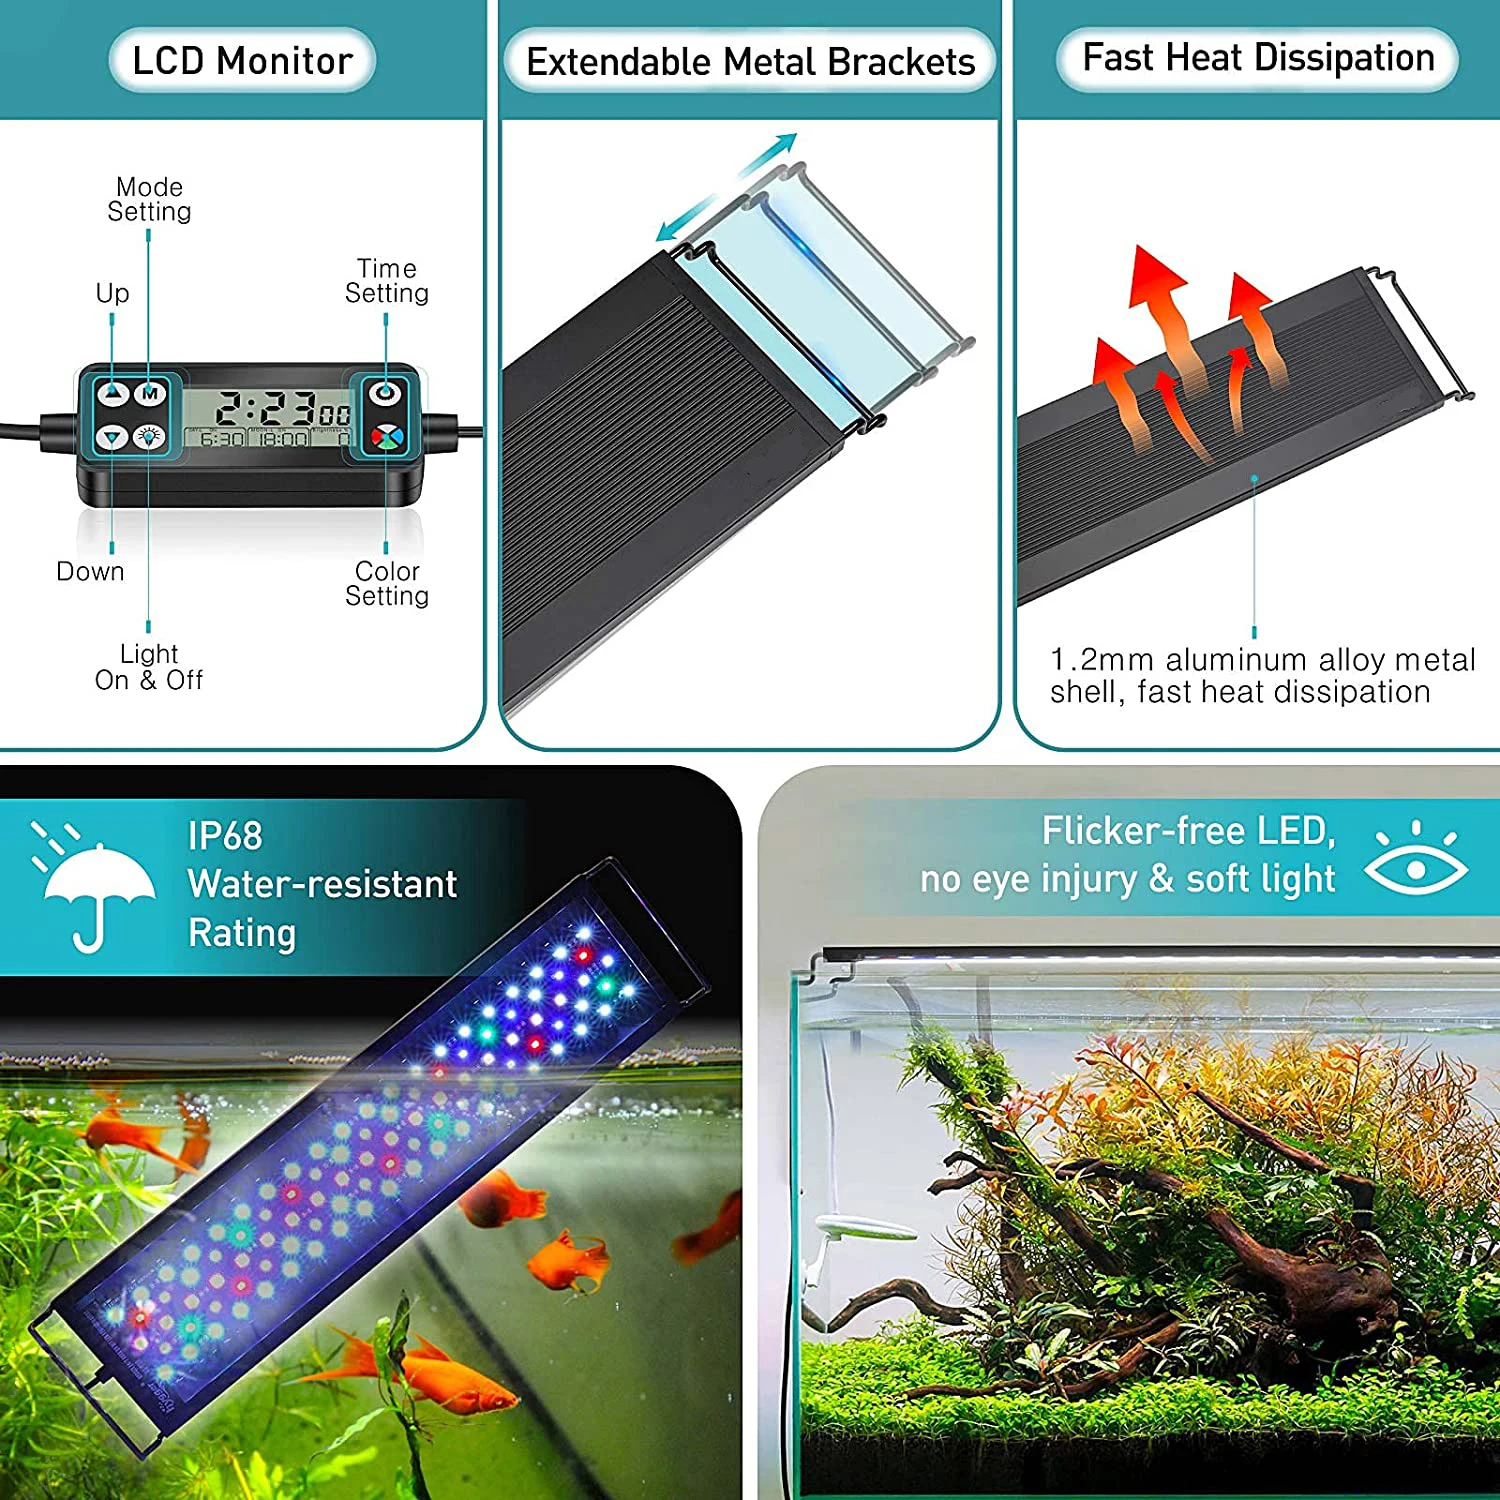 Lumières d'aquarium LED submersibles, avec minuterie automatique allumée /  désactivée